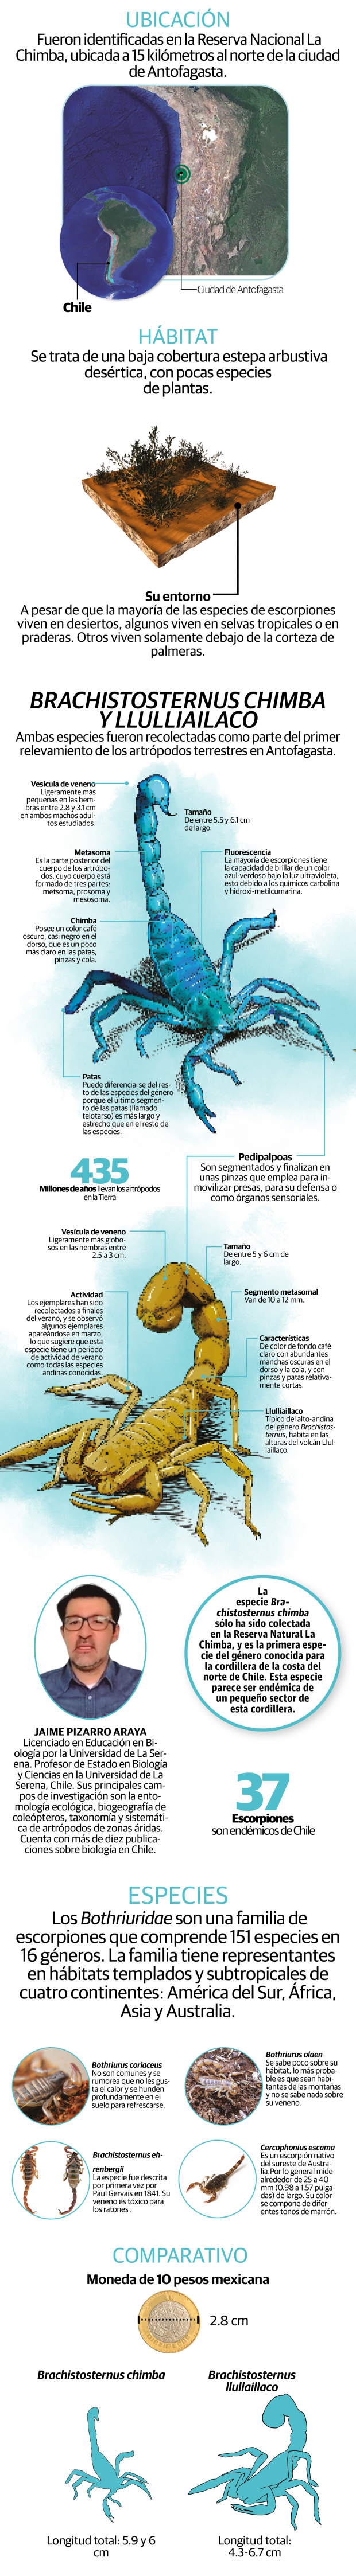 Descubren dos especies de escorpión en áreas protegidas de Antofagasta, Chile